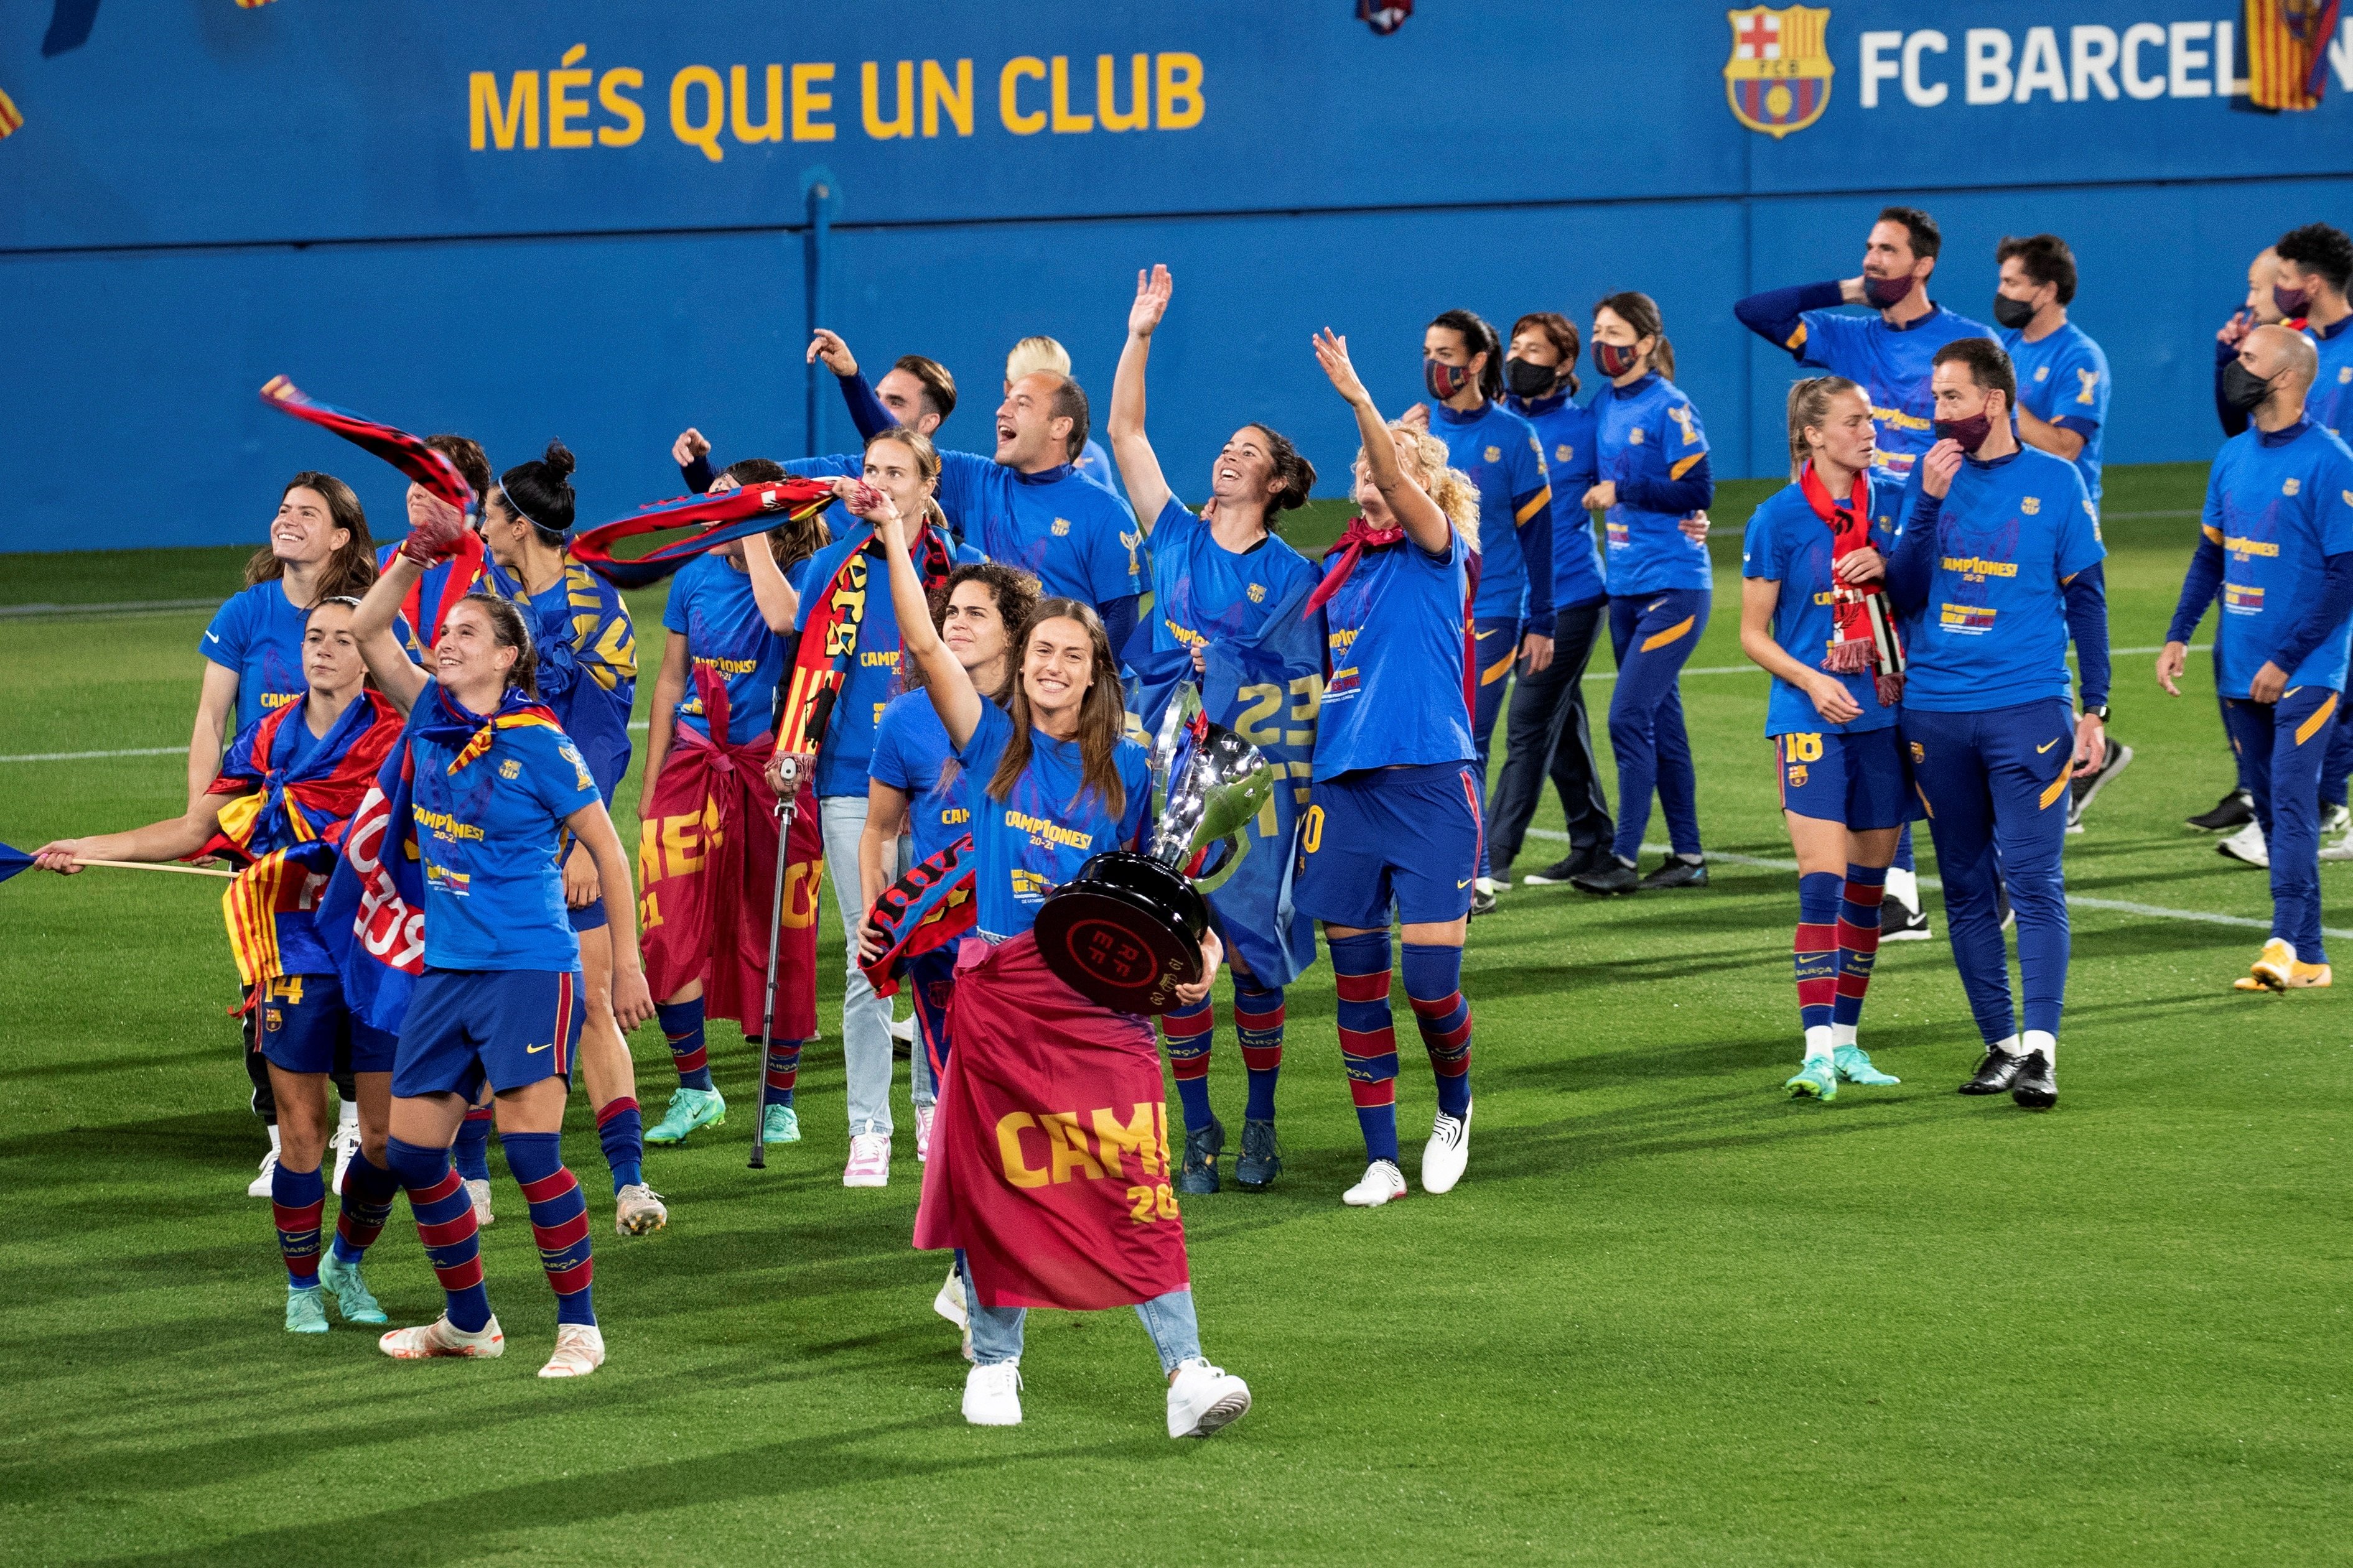 El Barça jugarà aquest estiu el Trofeu Joan Gamper femení